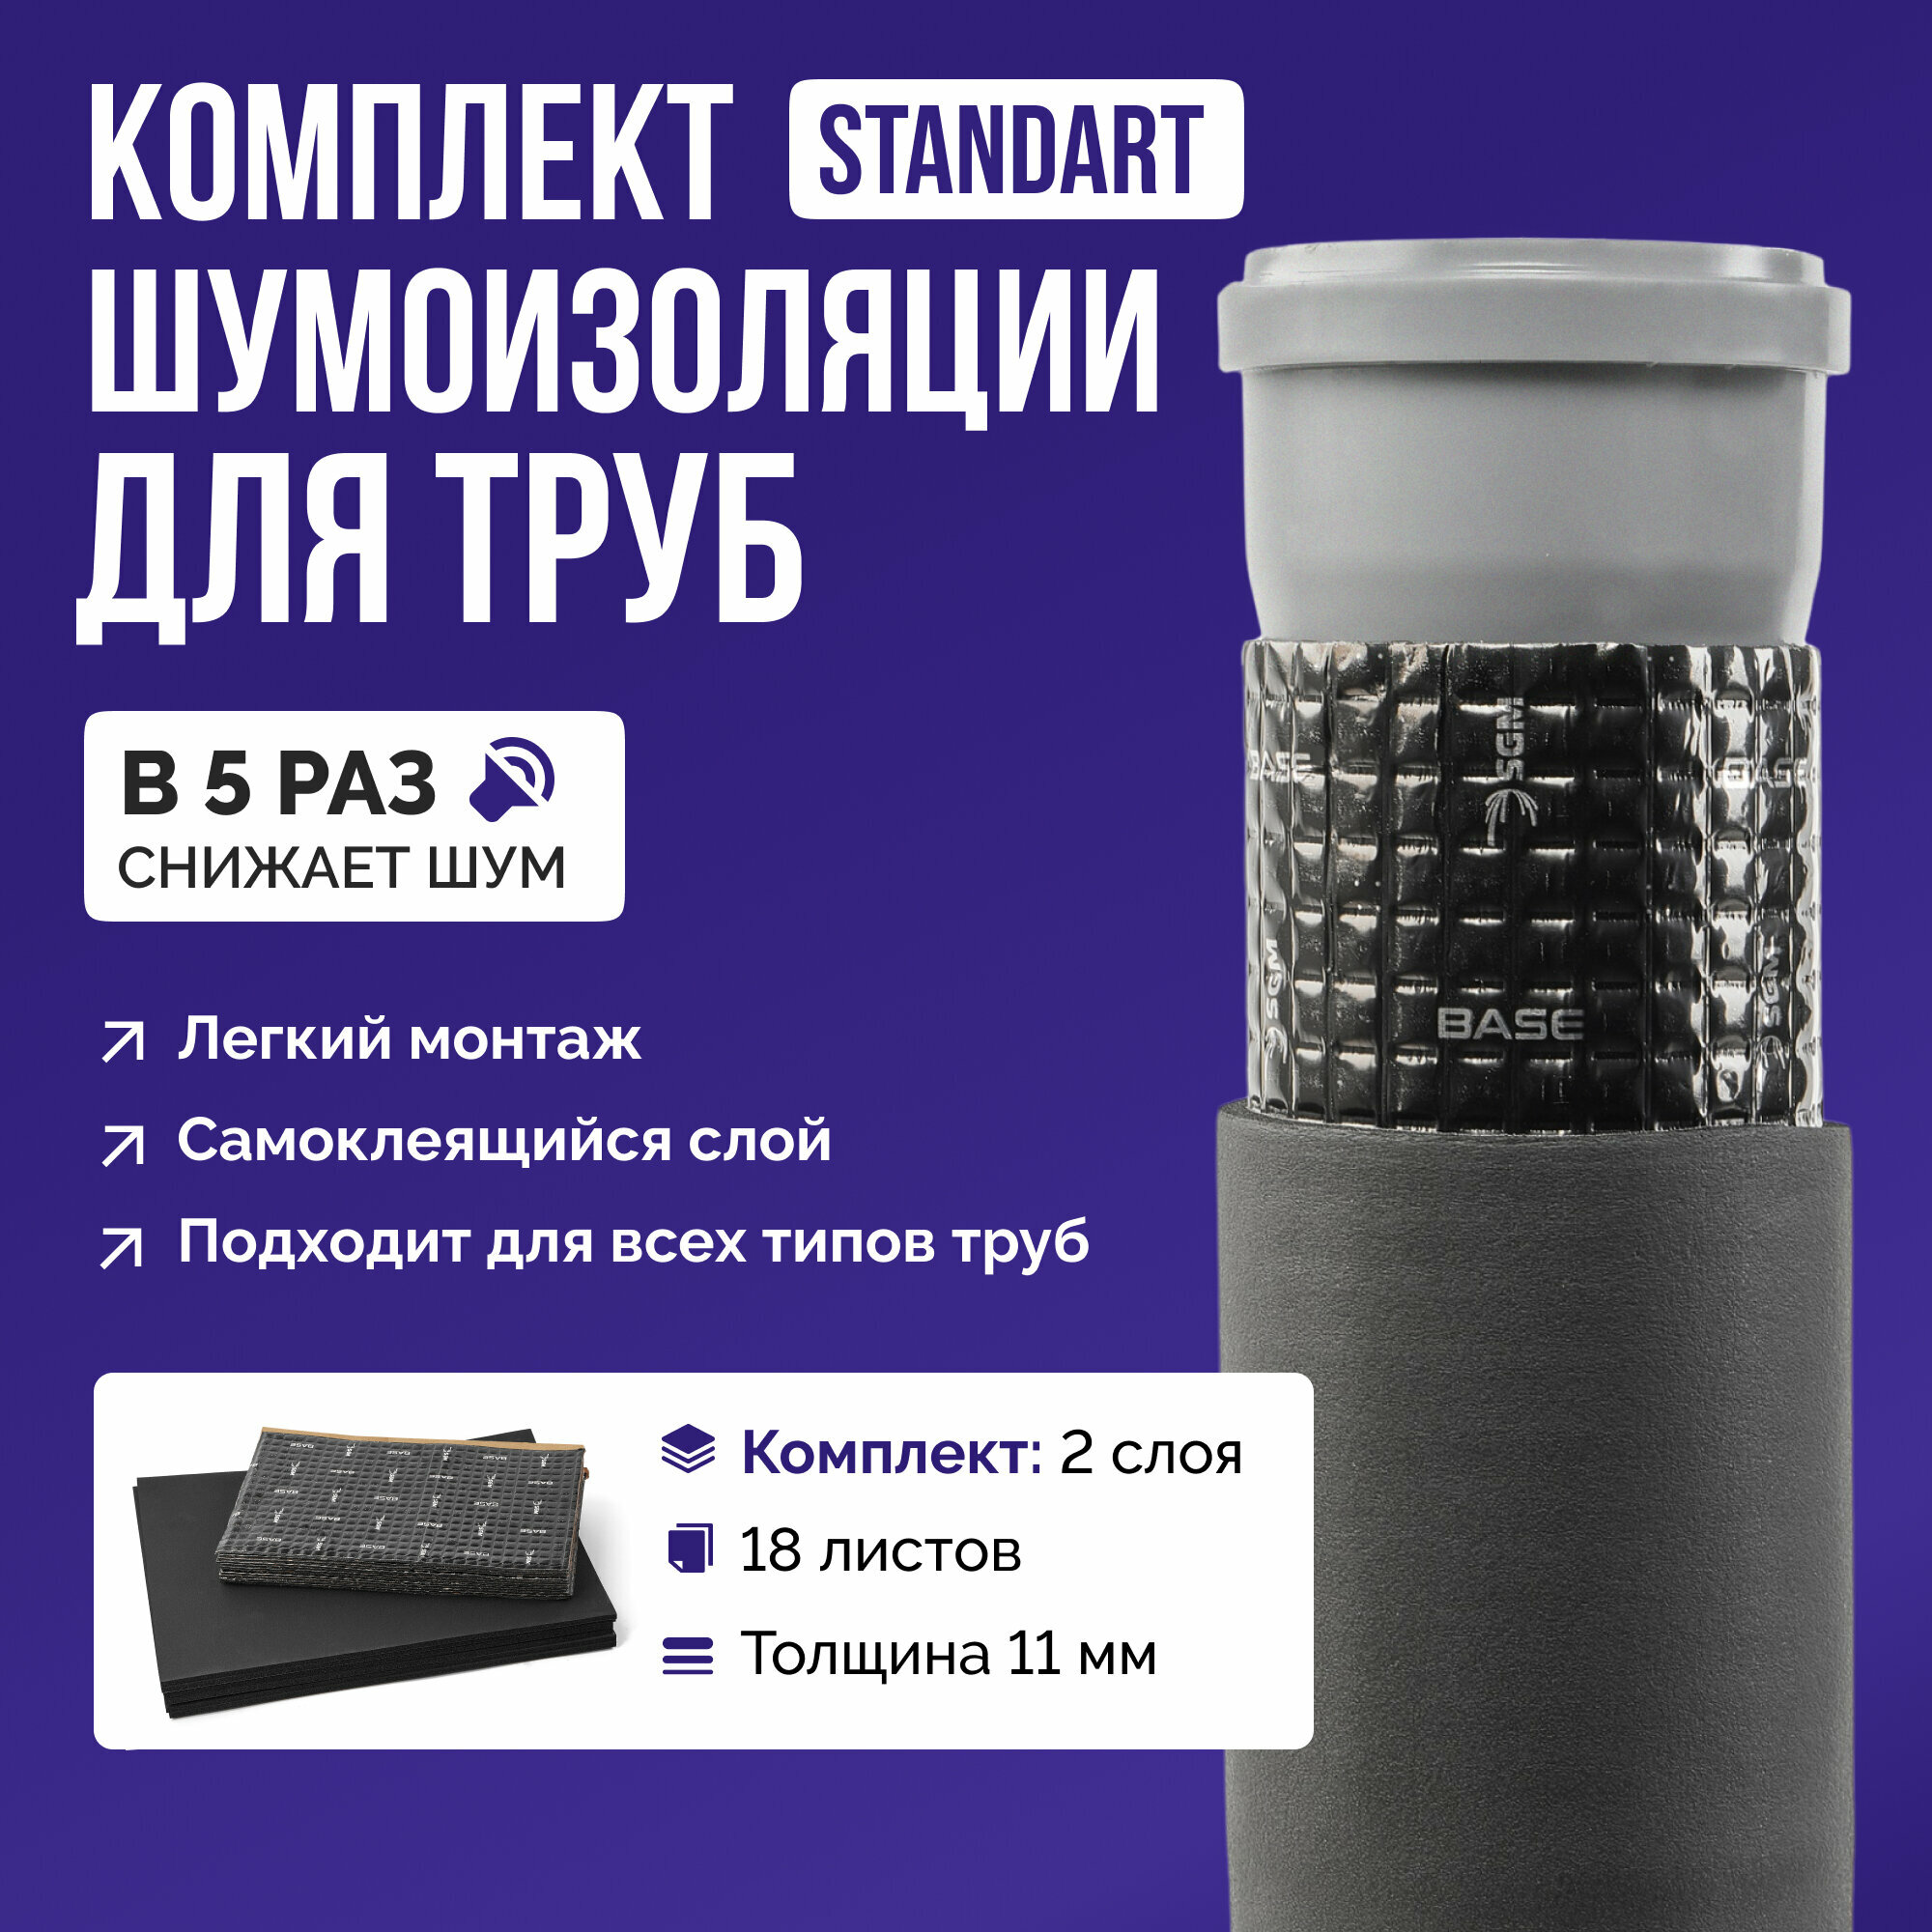 Шумоизоляция для труб набор SGM STANDARD для всех типов труб. Звукоизоляция сантехники канализации 110 стояка. Для ванной и кухни